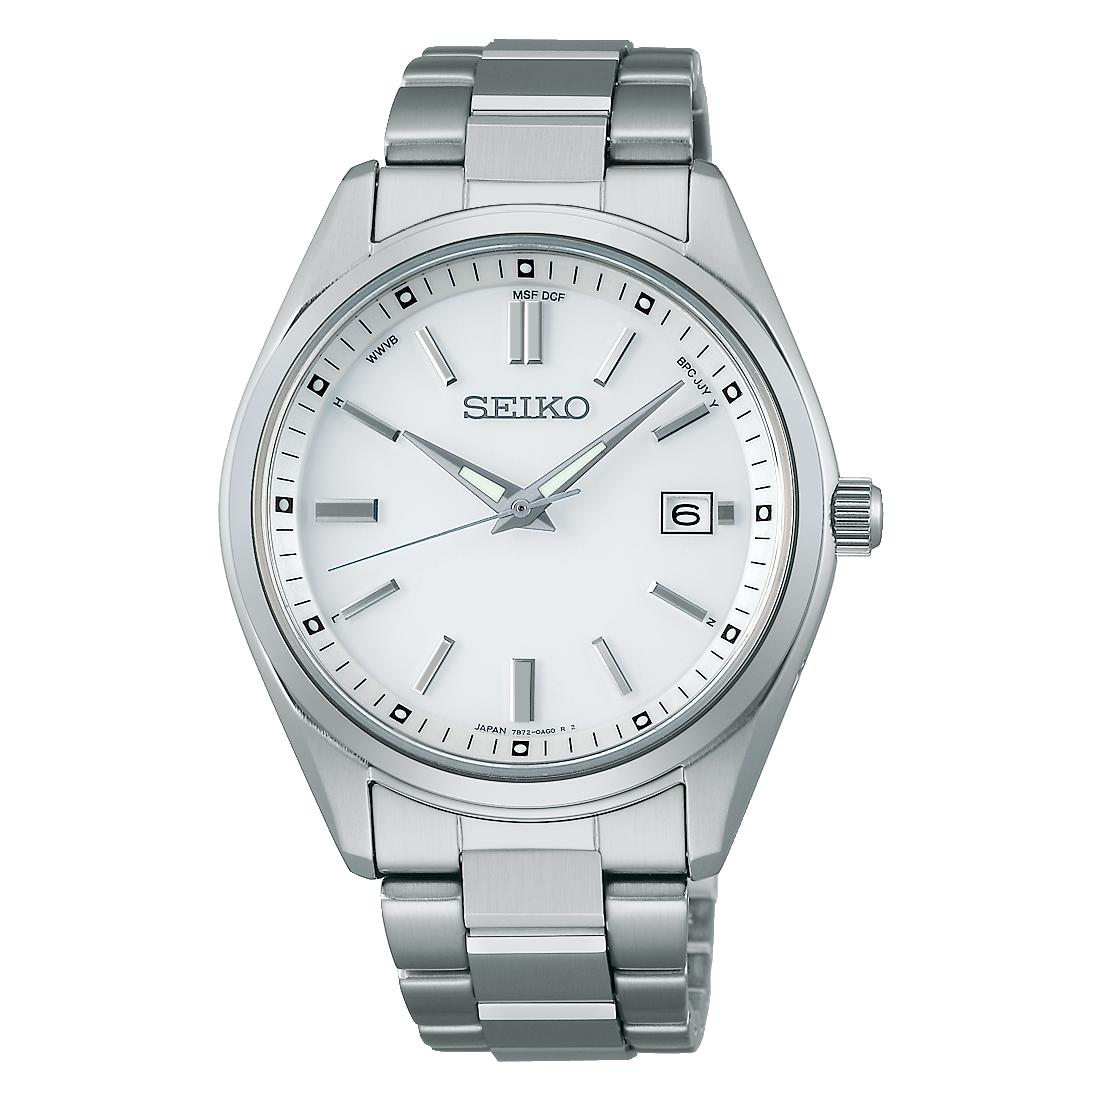 55000円税込み付属品【新品】セイコー SEIKO 10気圧防水 SBTM170 メンズ腕時計 保証付